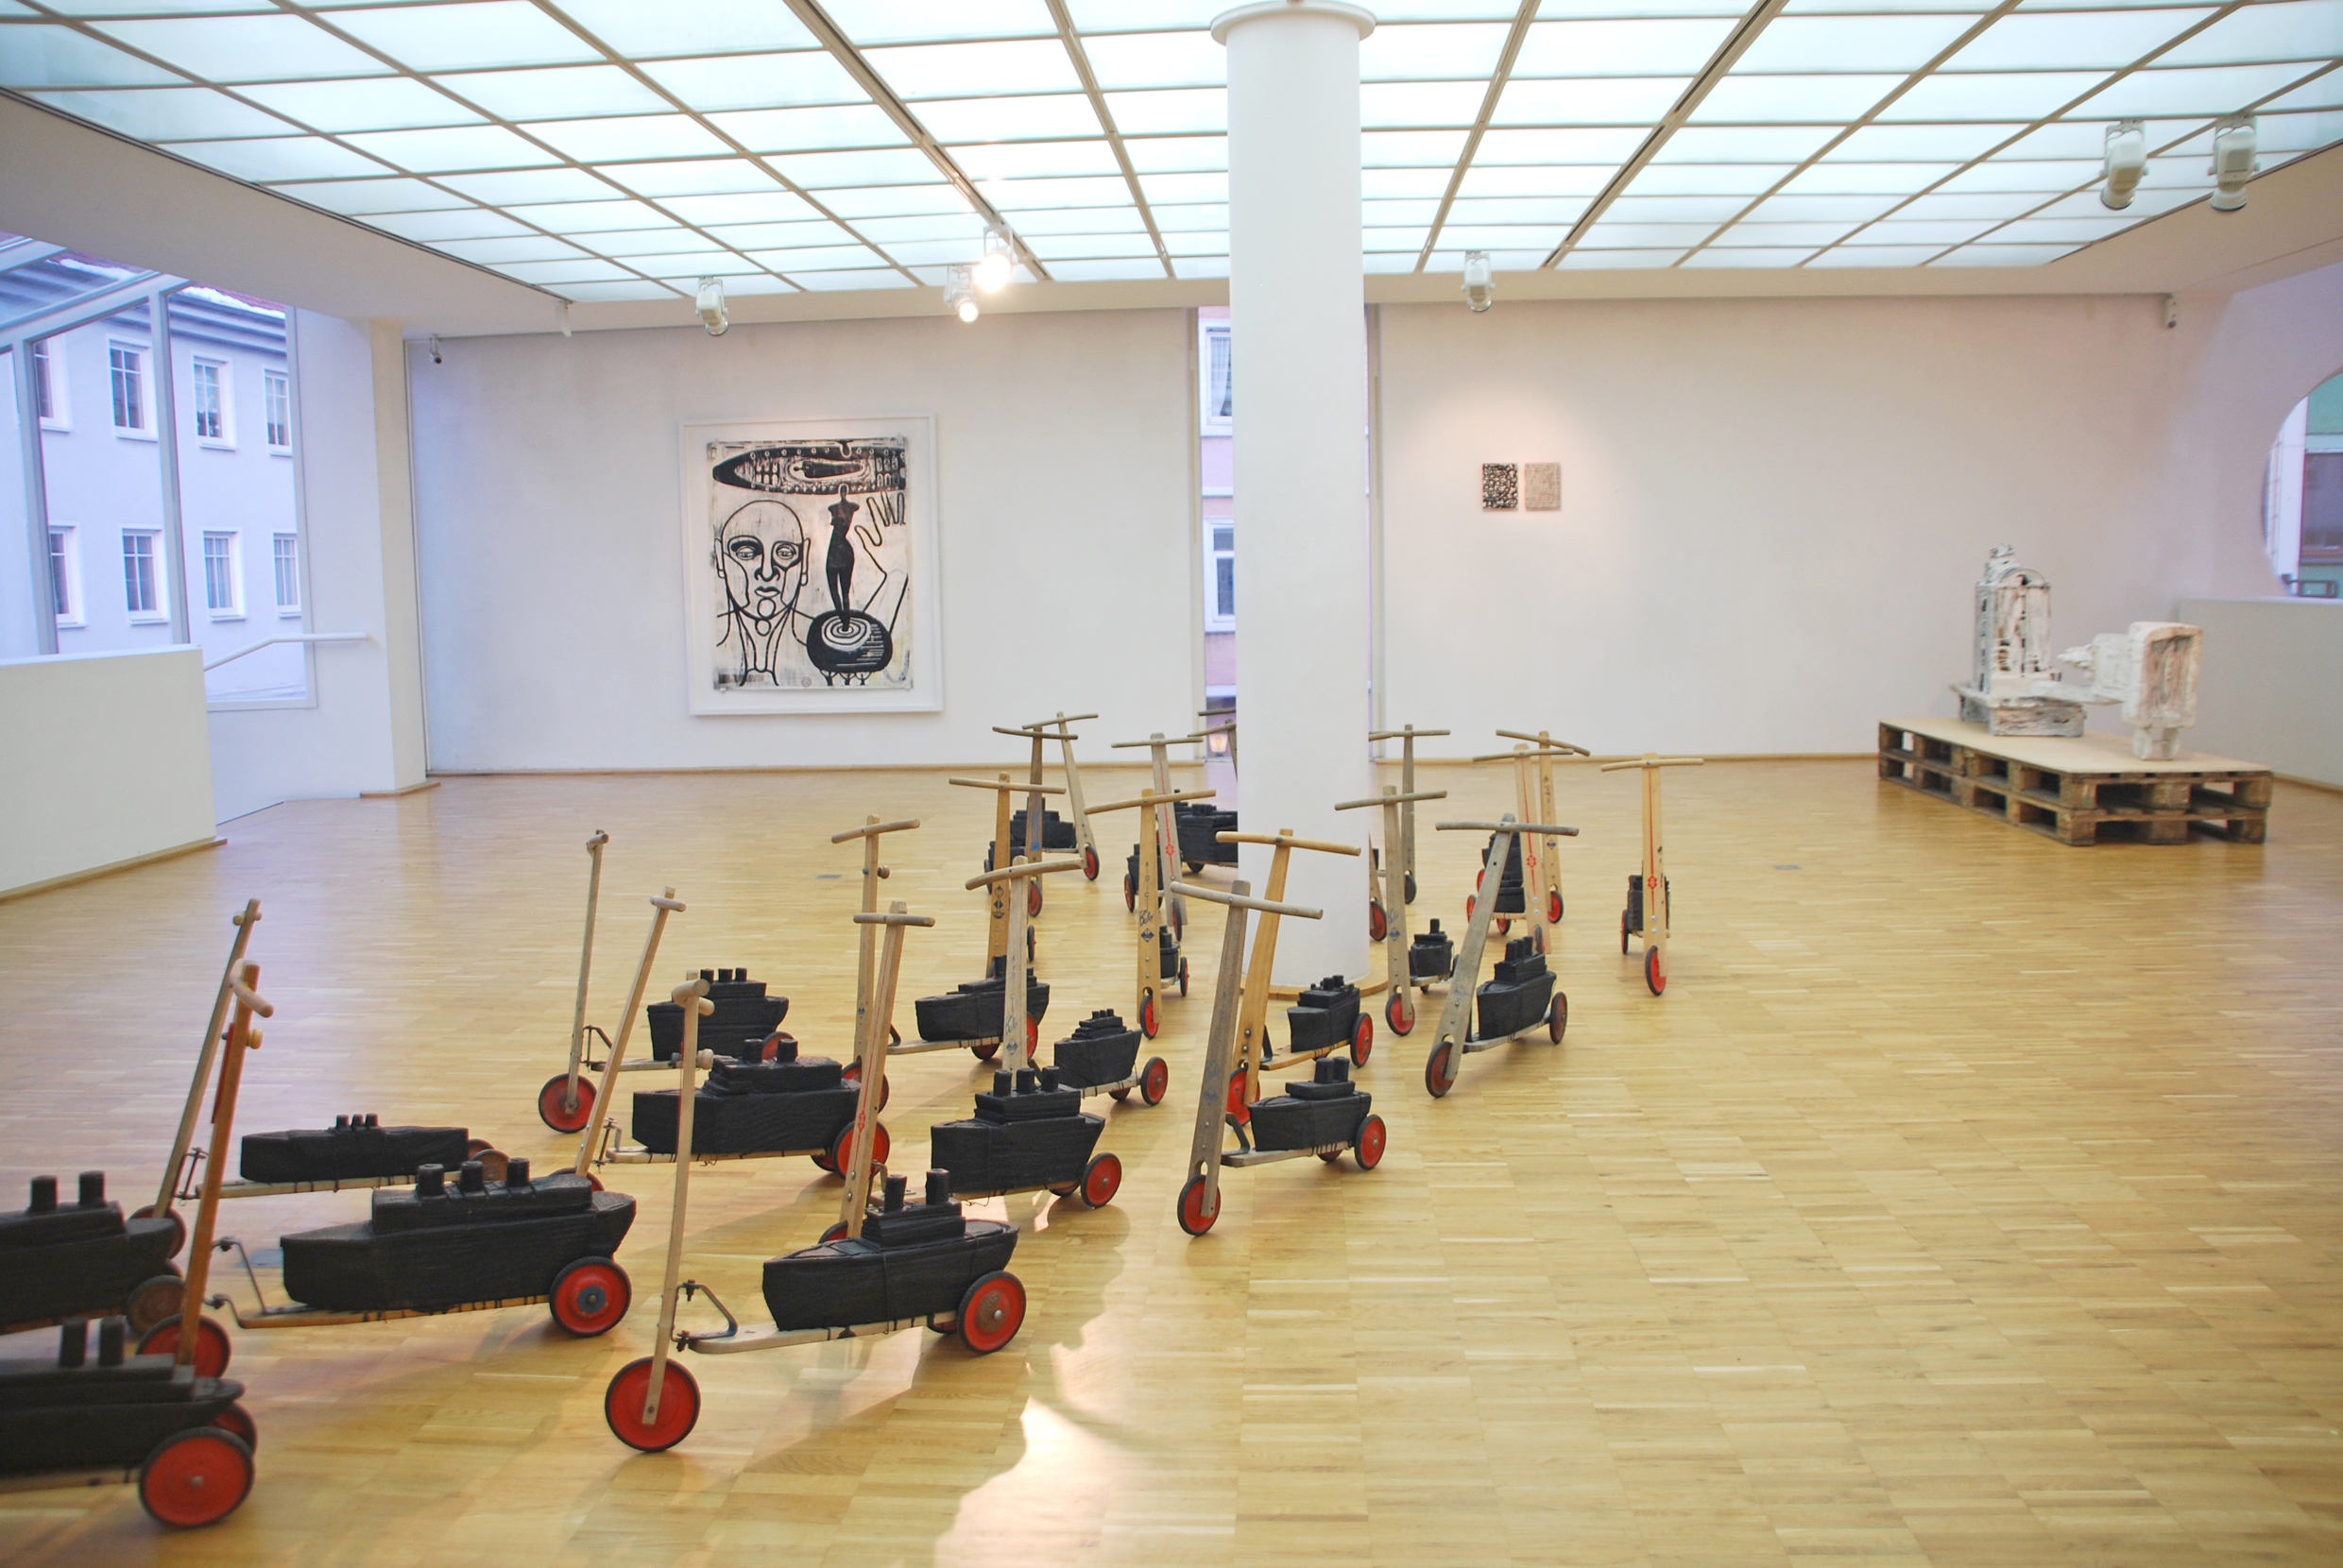 Ausstellung Städt. GalerieTuttlingen 2013_a